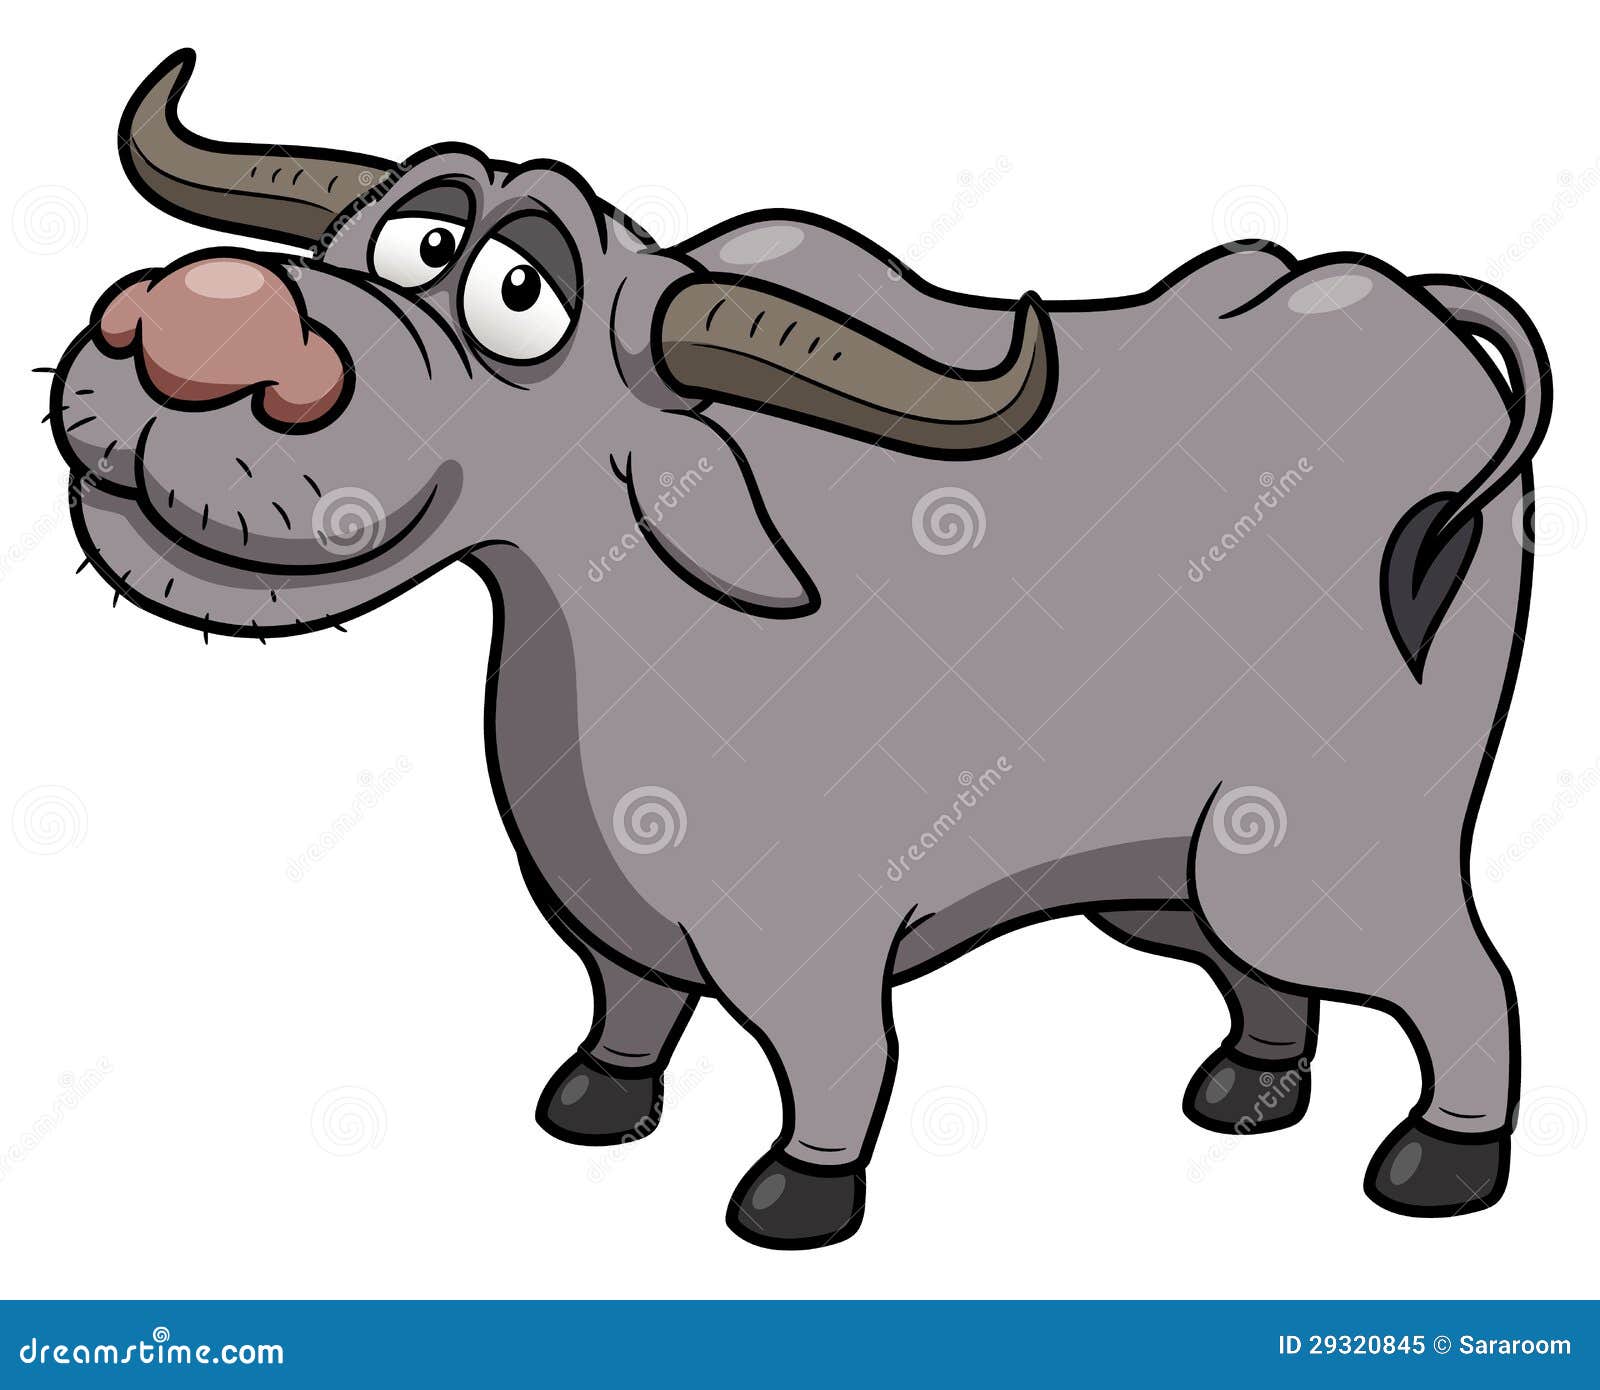 Cartoon Buffalo Royalty Free Stock Photo - Image: 29320845